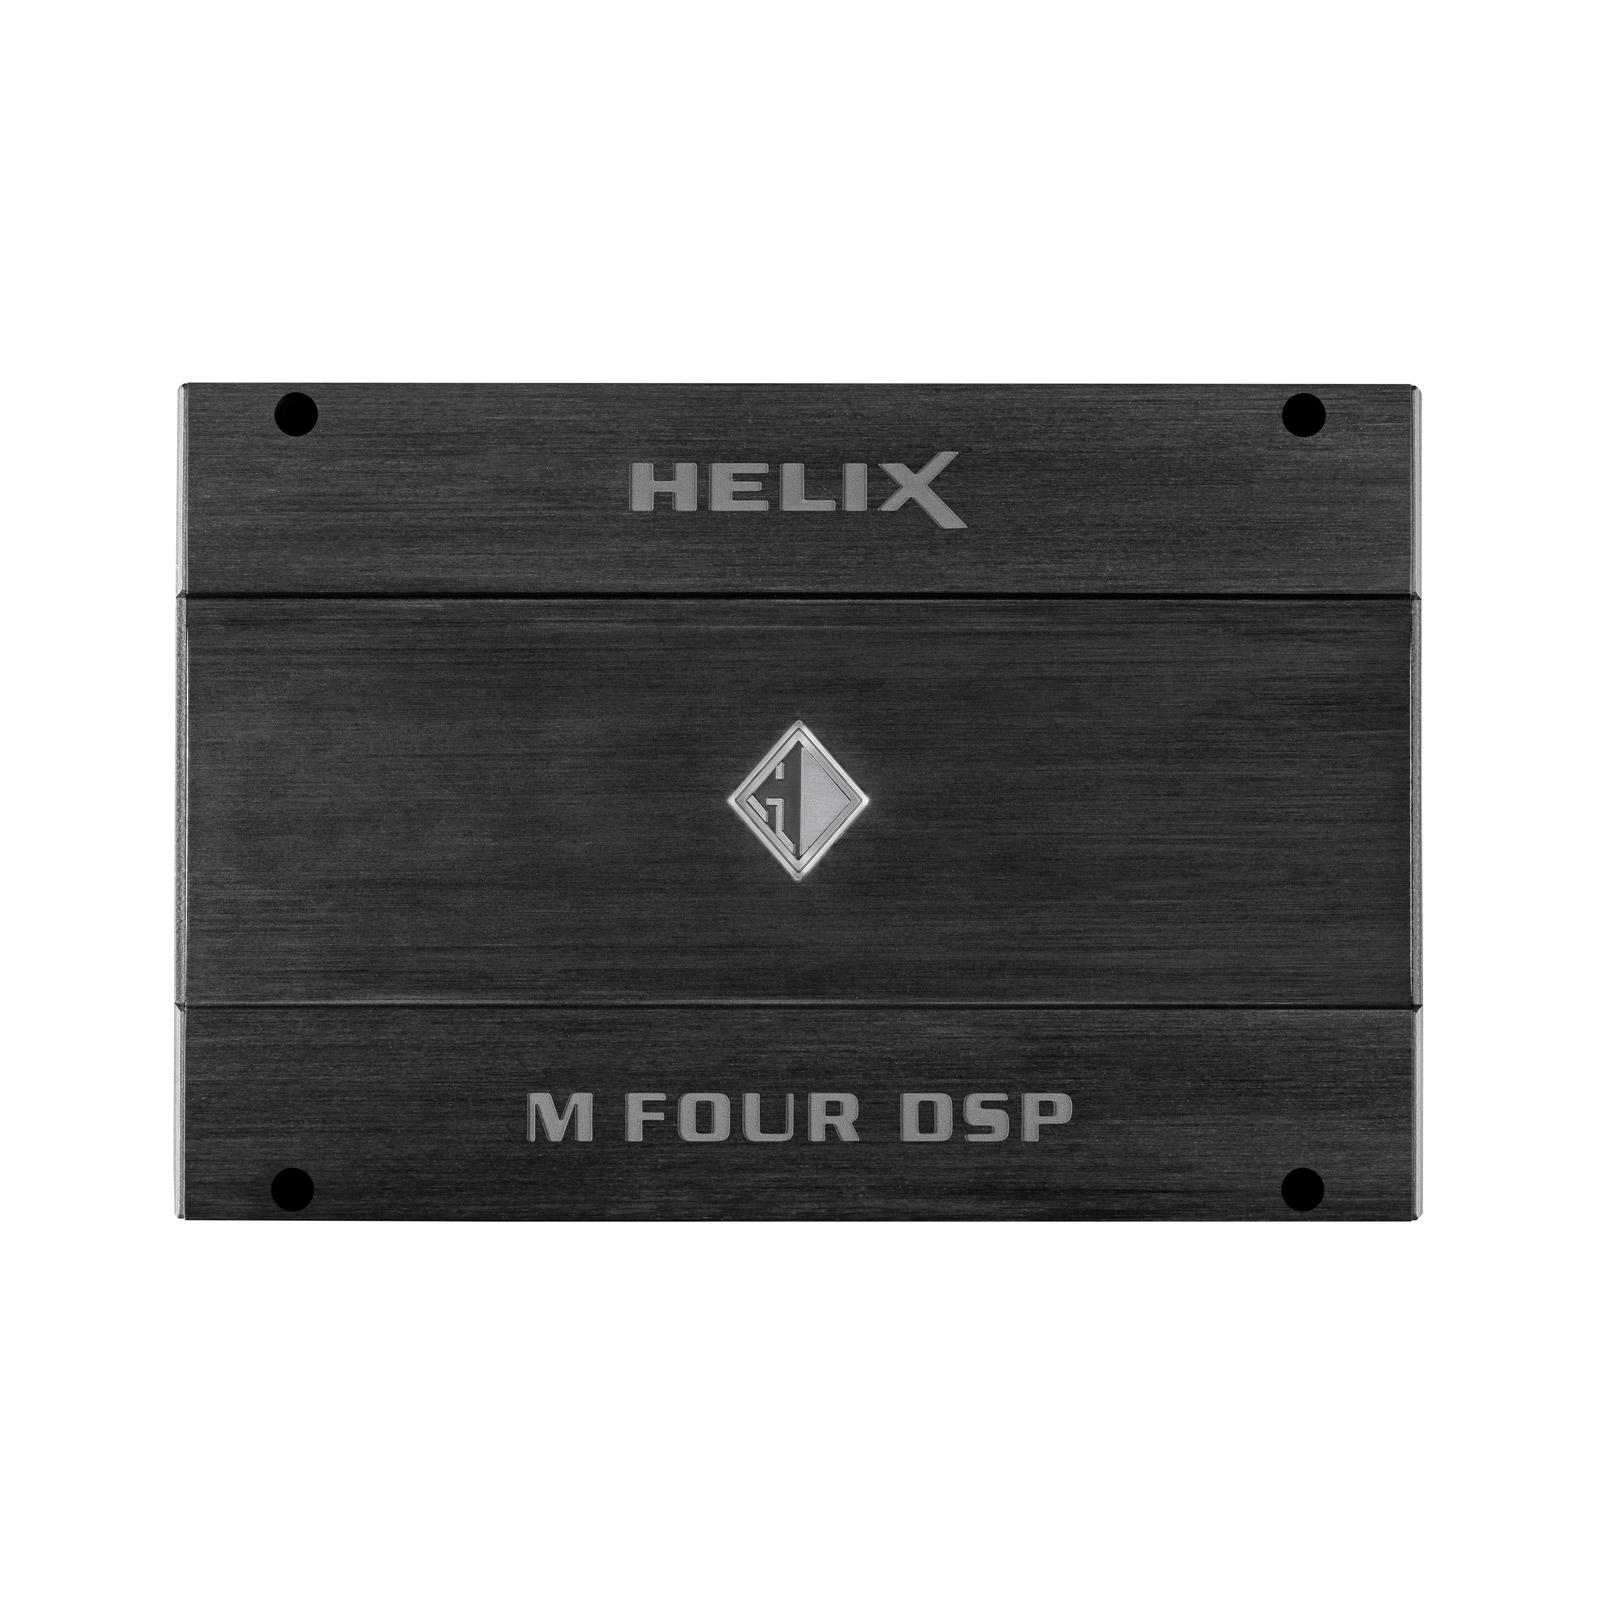 Helix M Four DSP 4 Channel Amplifier